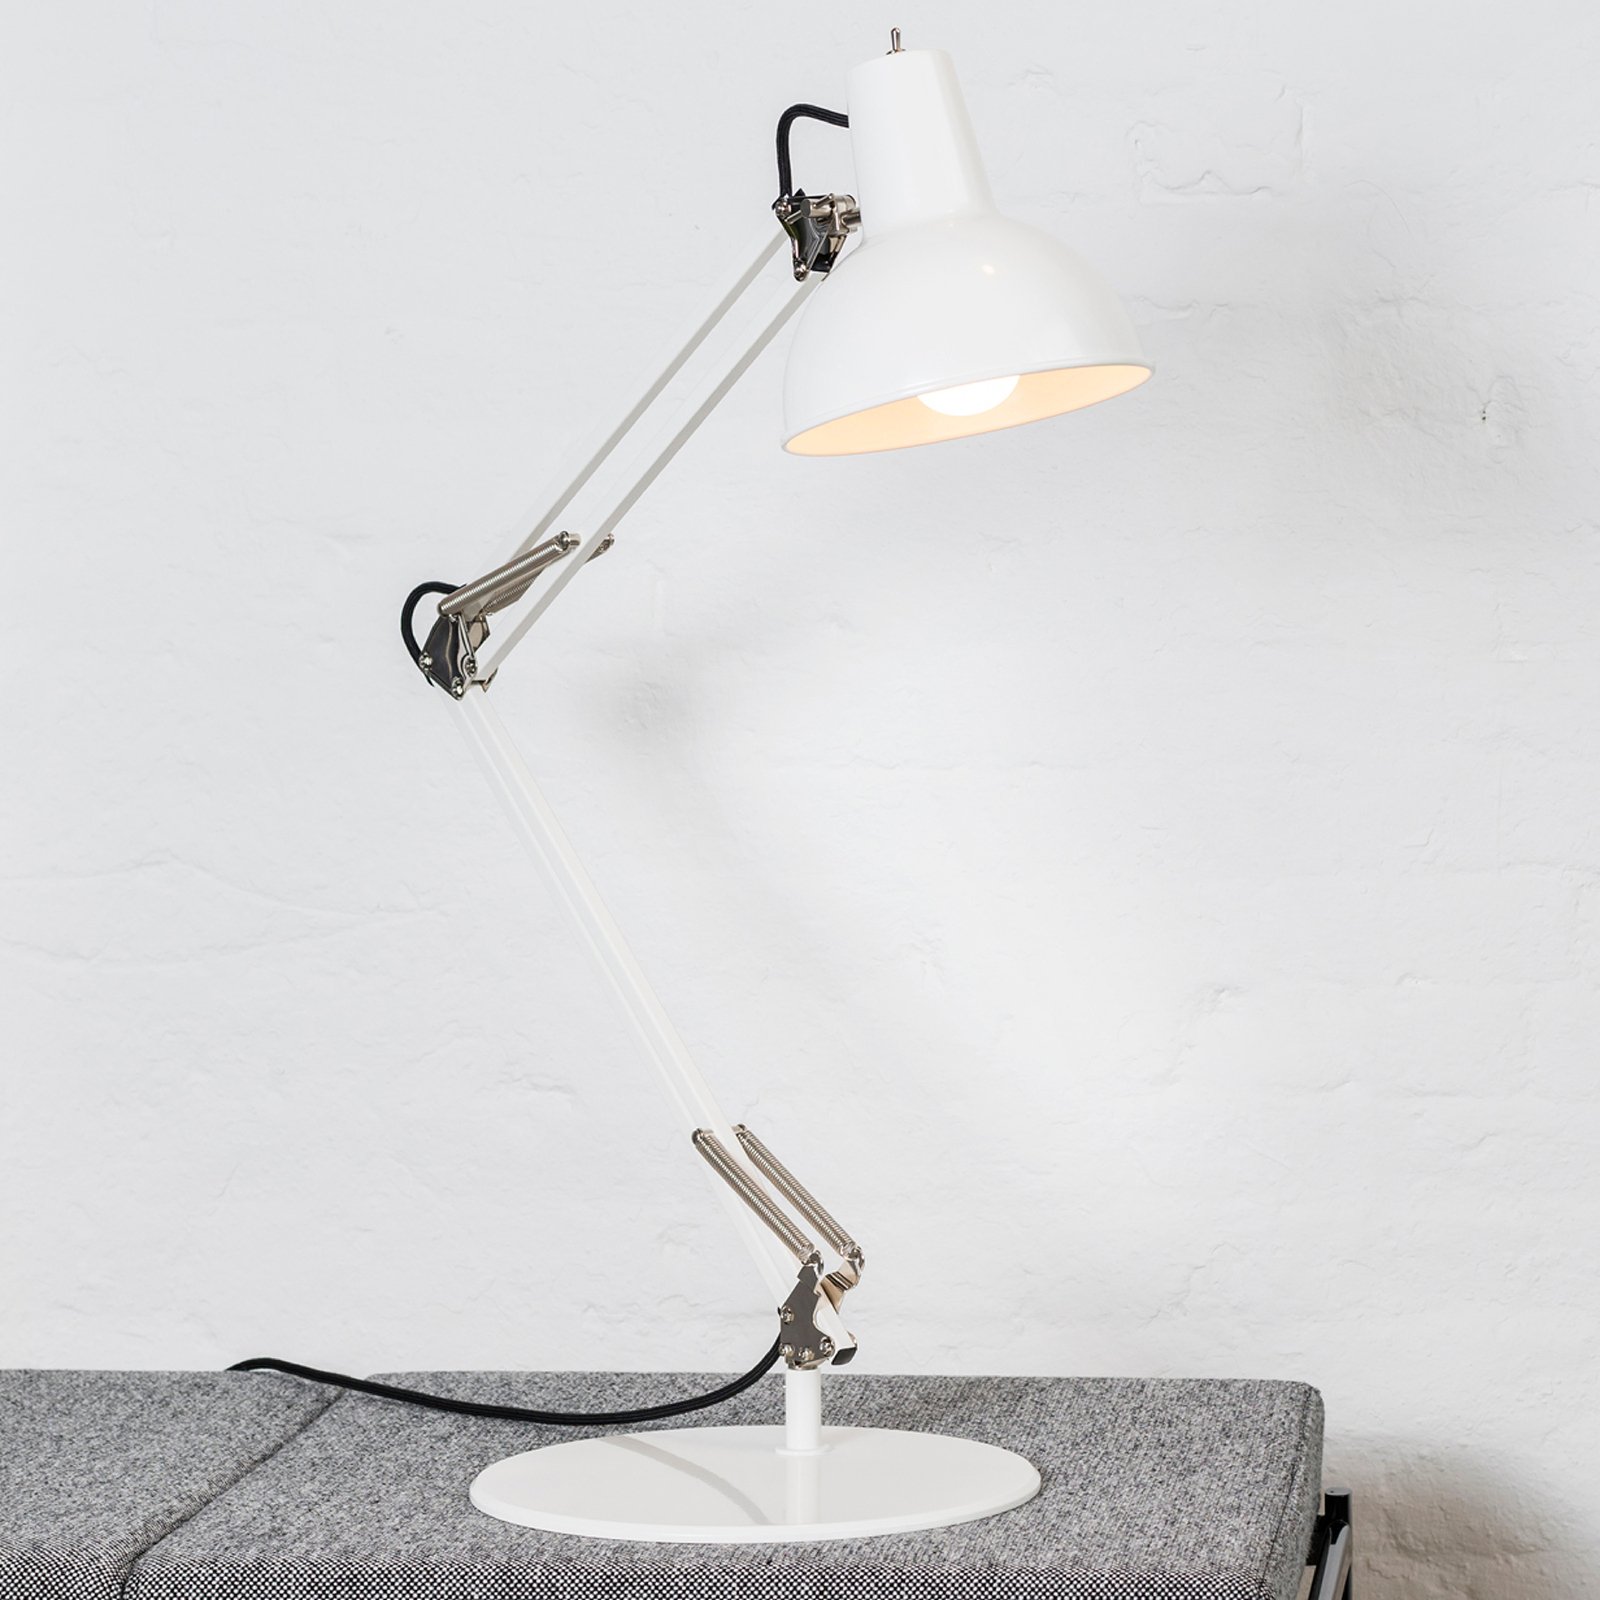 midgard Federzug lámpara de mesa con base blanco